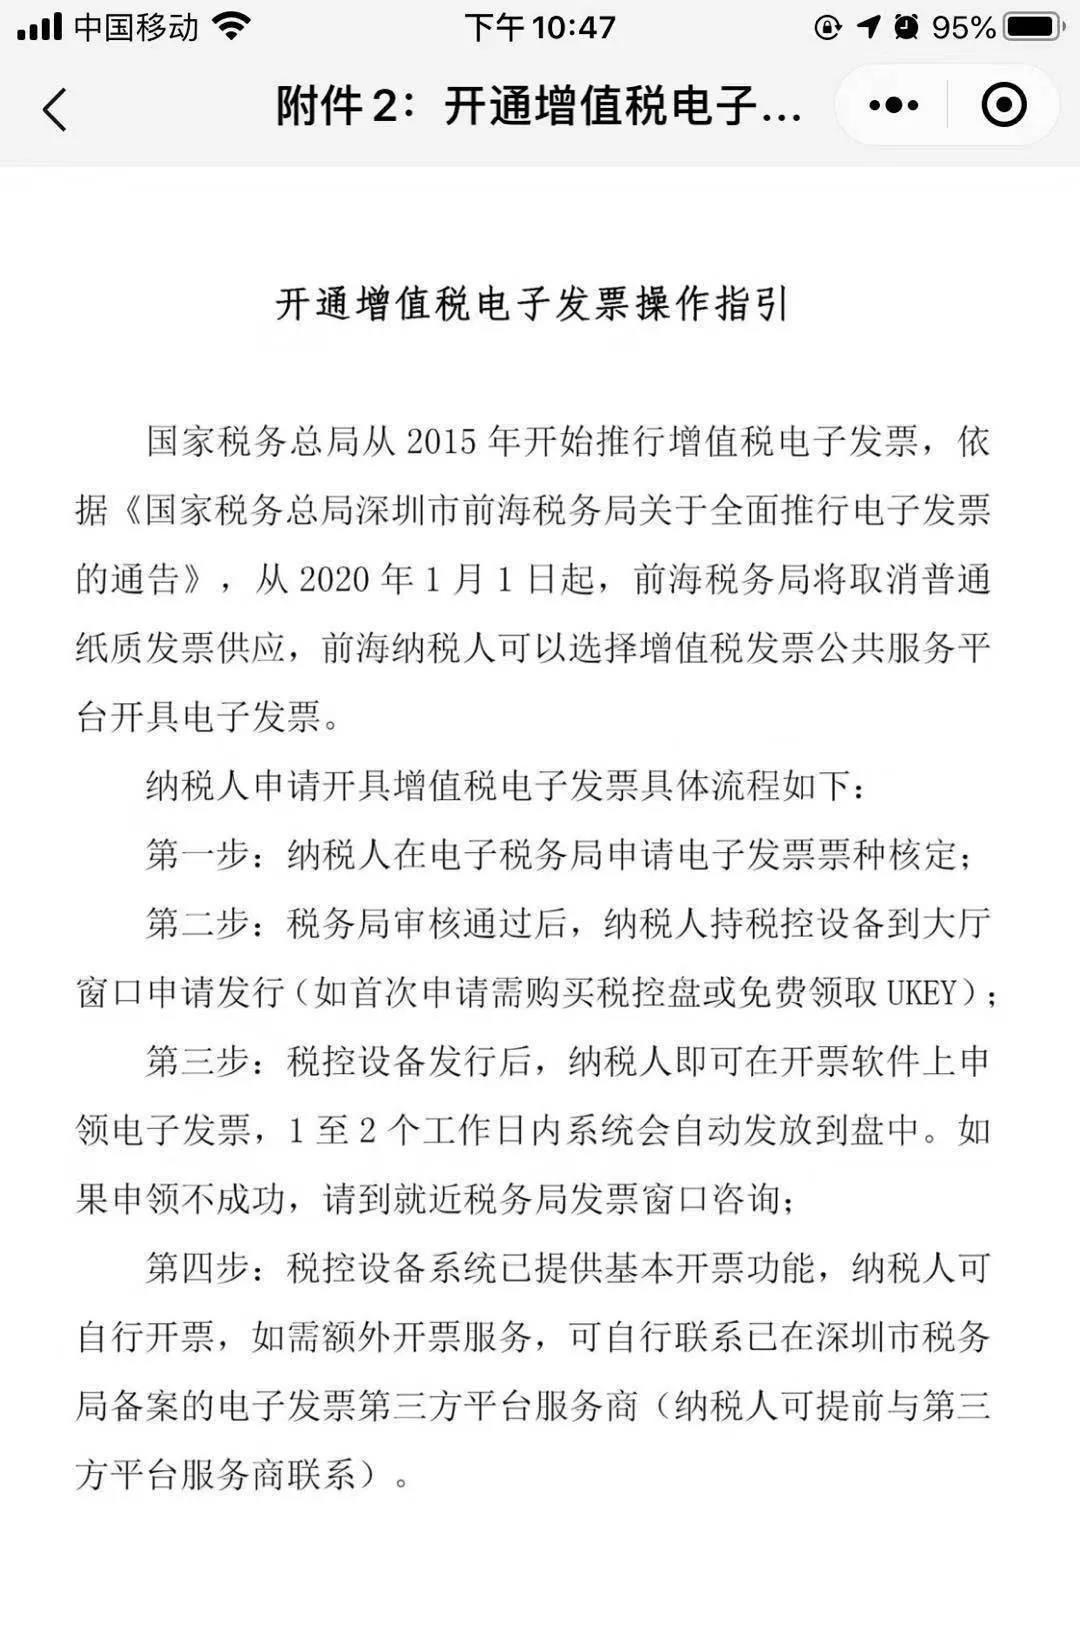 也一起分享给大家:去年,深圳市前海税务局发布《关于全面推行电子发票